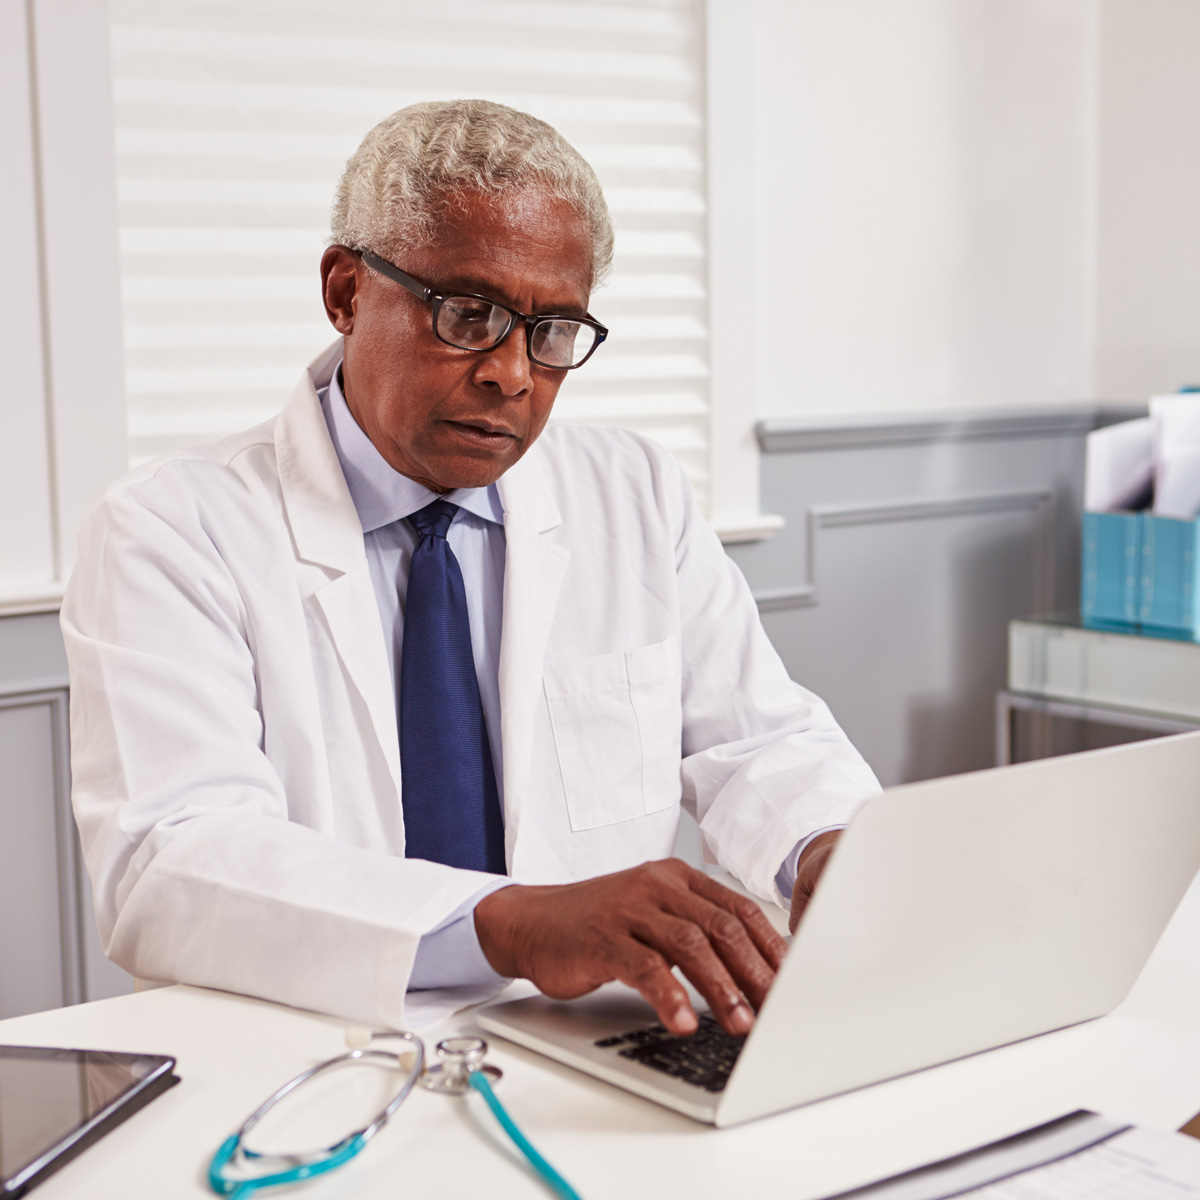 médico trabajando en un computador portátil en su consultorio